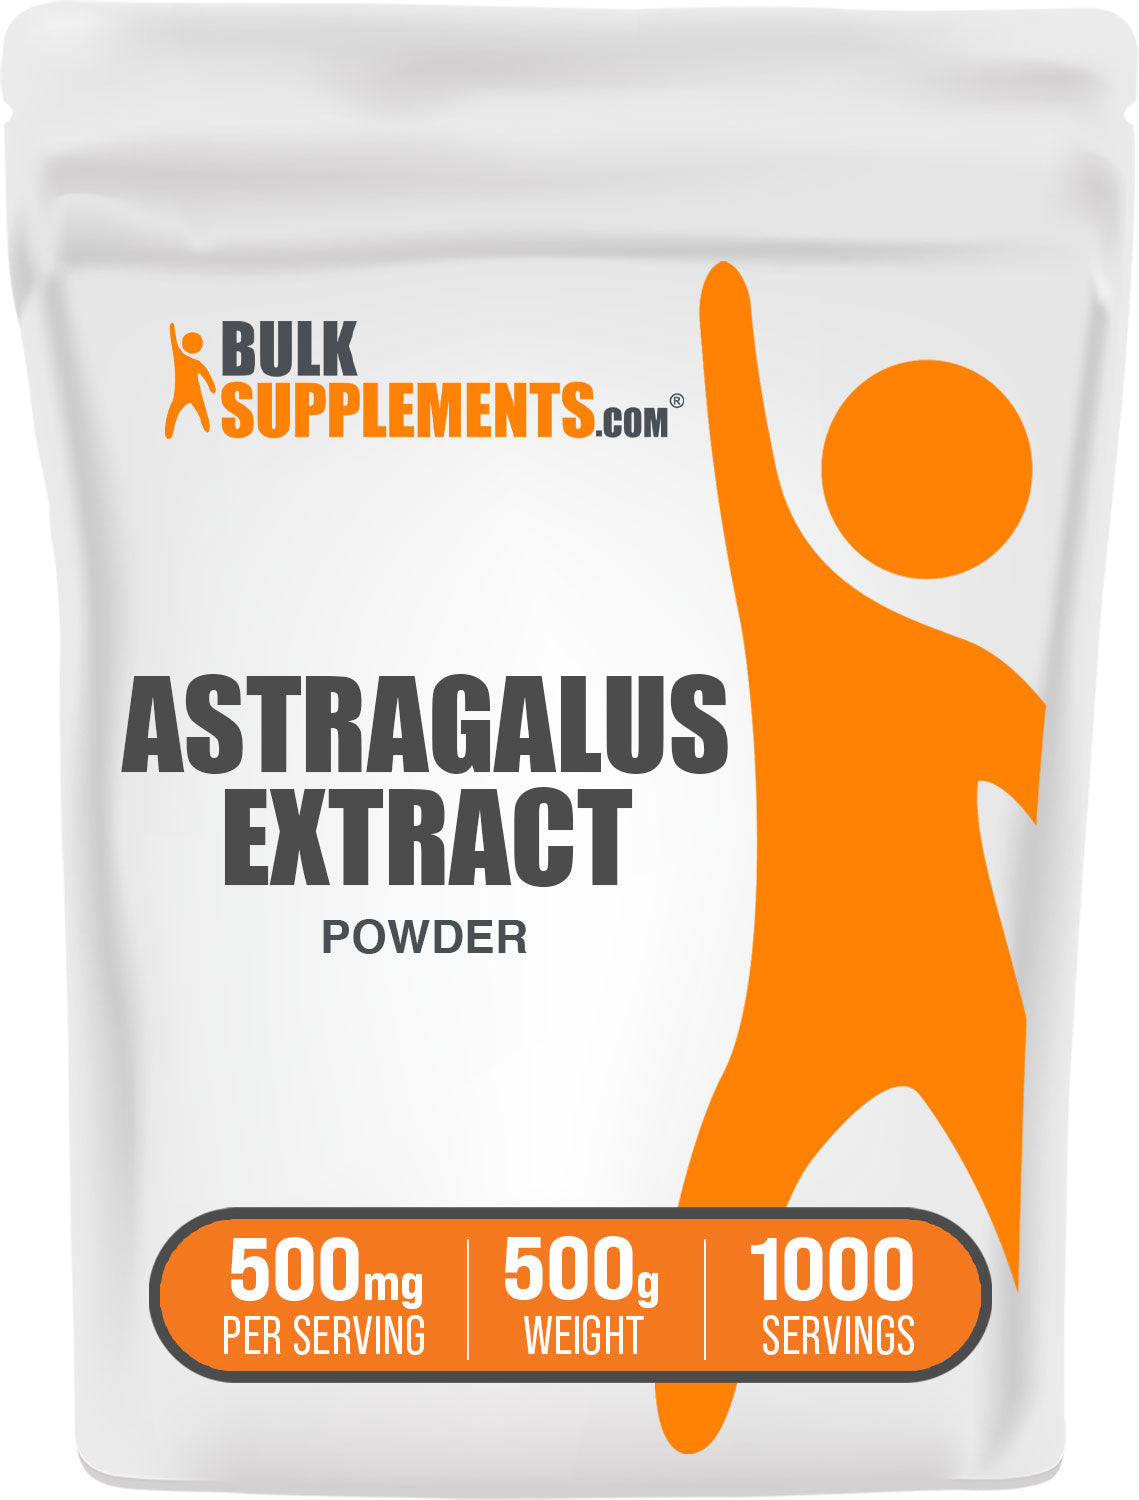 BulkSupplements.com Astragalus Extract Powder 500g bag